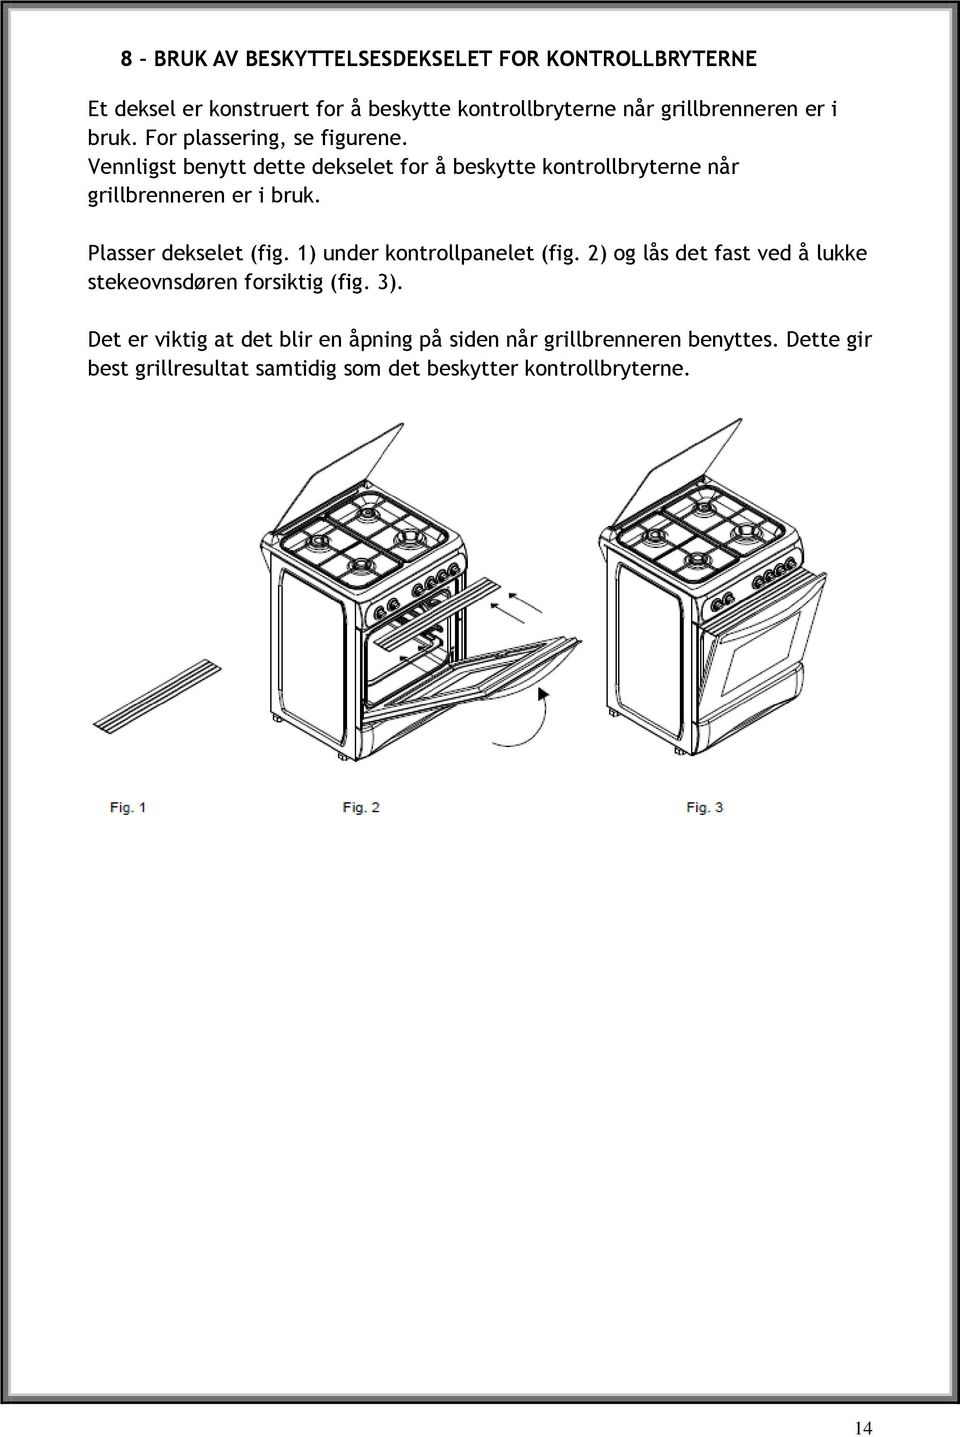 Plasser dekselet (fig. 1) under kontrollpanelet (fig. 2) og lås det fast ved å lukke stekeovnsdøren forsiktig (fig. 3).